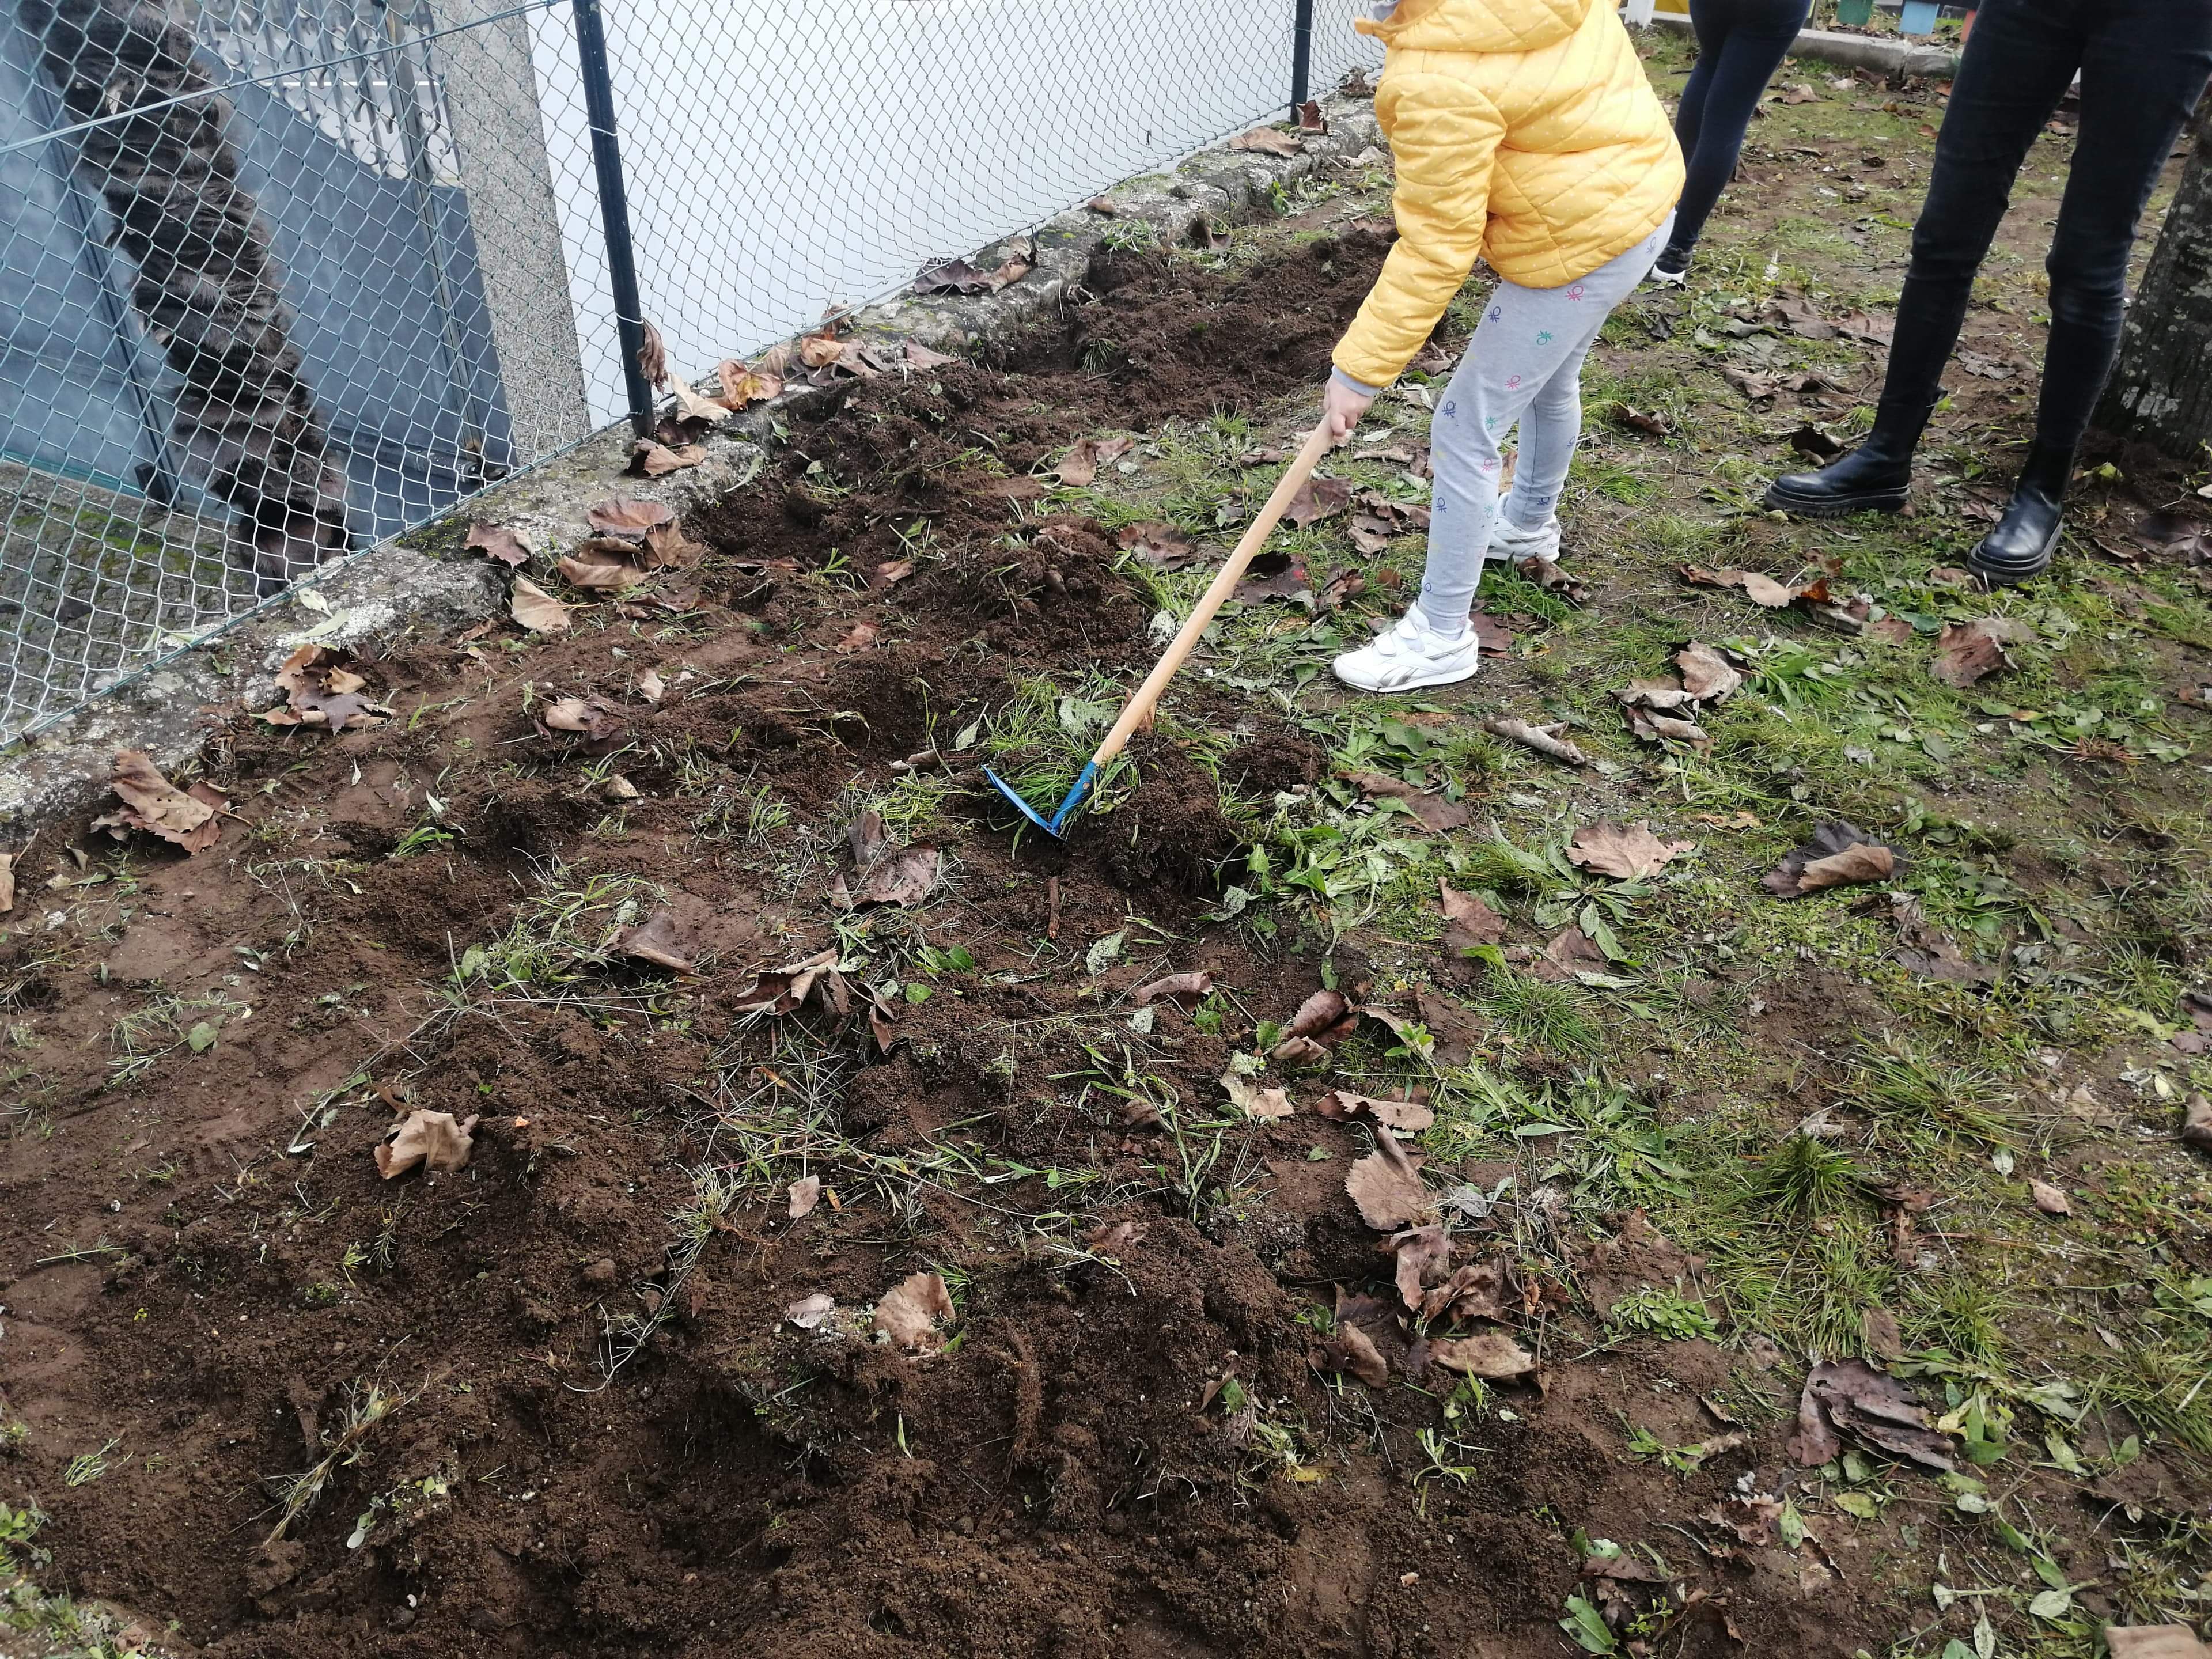 Iniciação da Horta Bio.
Nesta imagem podemos ver um aluno a cavar a terra com uma enxada.